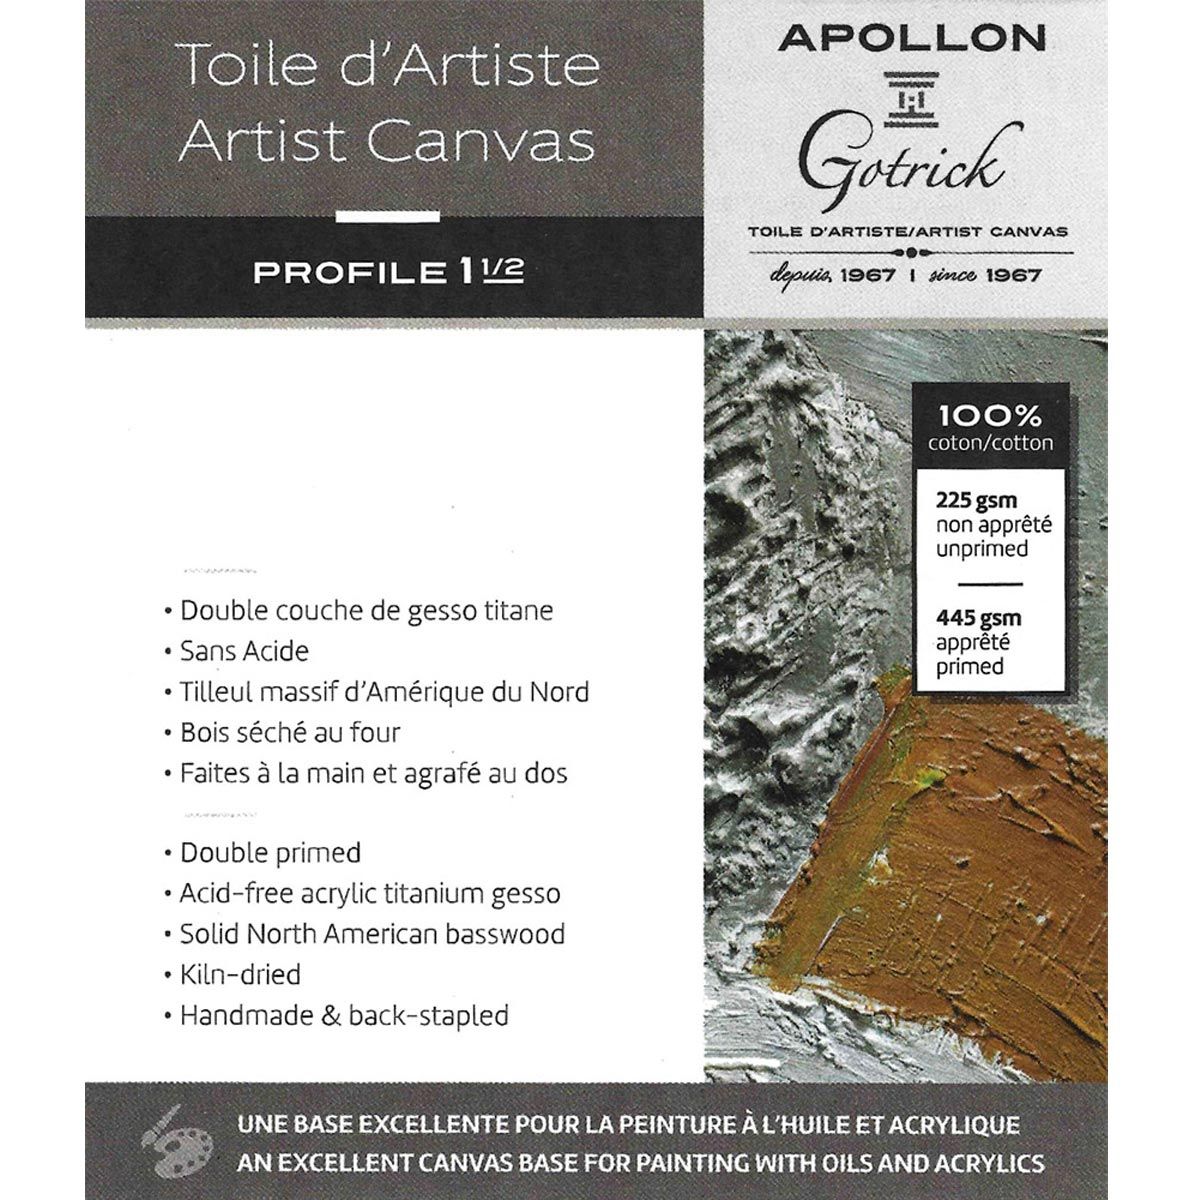 Apollon Gotrick Gallery Artist Canvas Profile 1½" - 24" x 36"